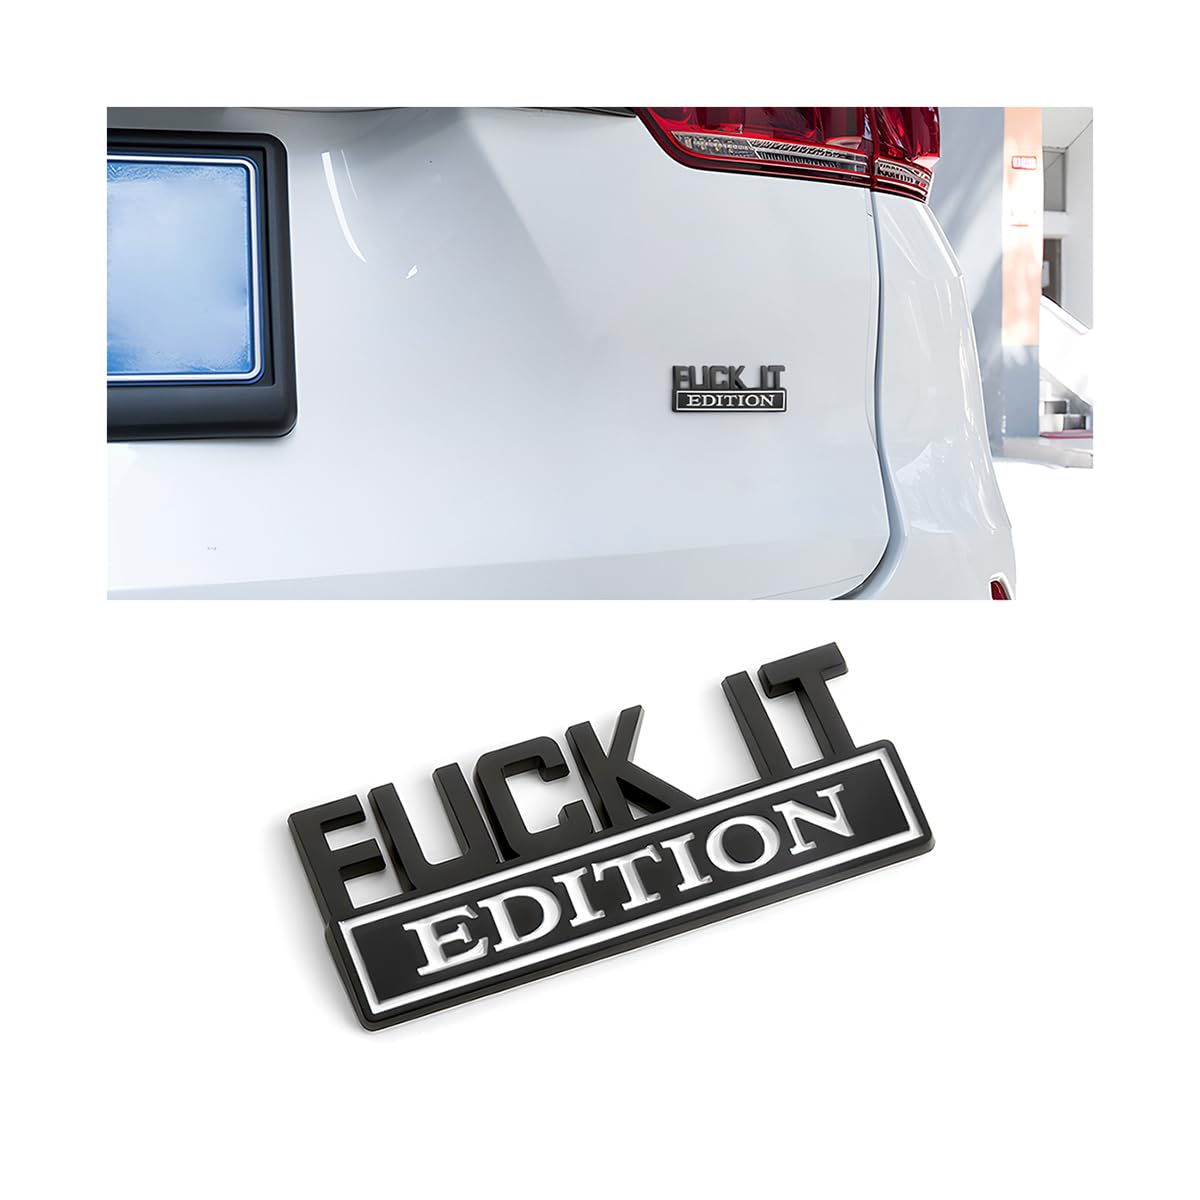 CGEAMDY Selbstklebende Auto-Emblem-Autoaufkleber, Fuck It Edition, Geeignet für Autoinnen-und Außendekoration oder Glasoberflächen 3D-Buchstaben Aufkleber (Schwarz-Weiß) von CGEAMDY